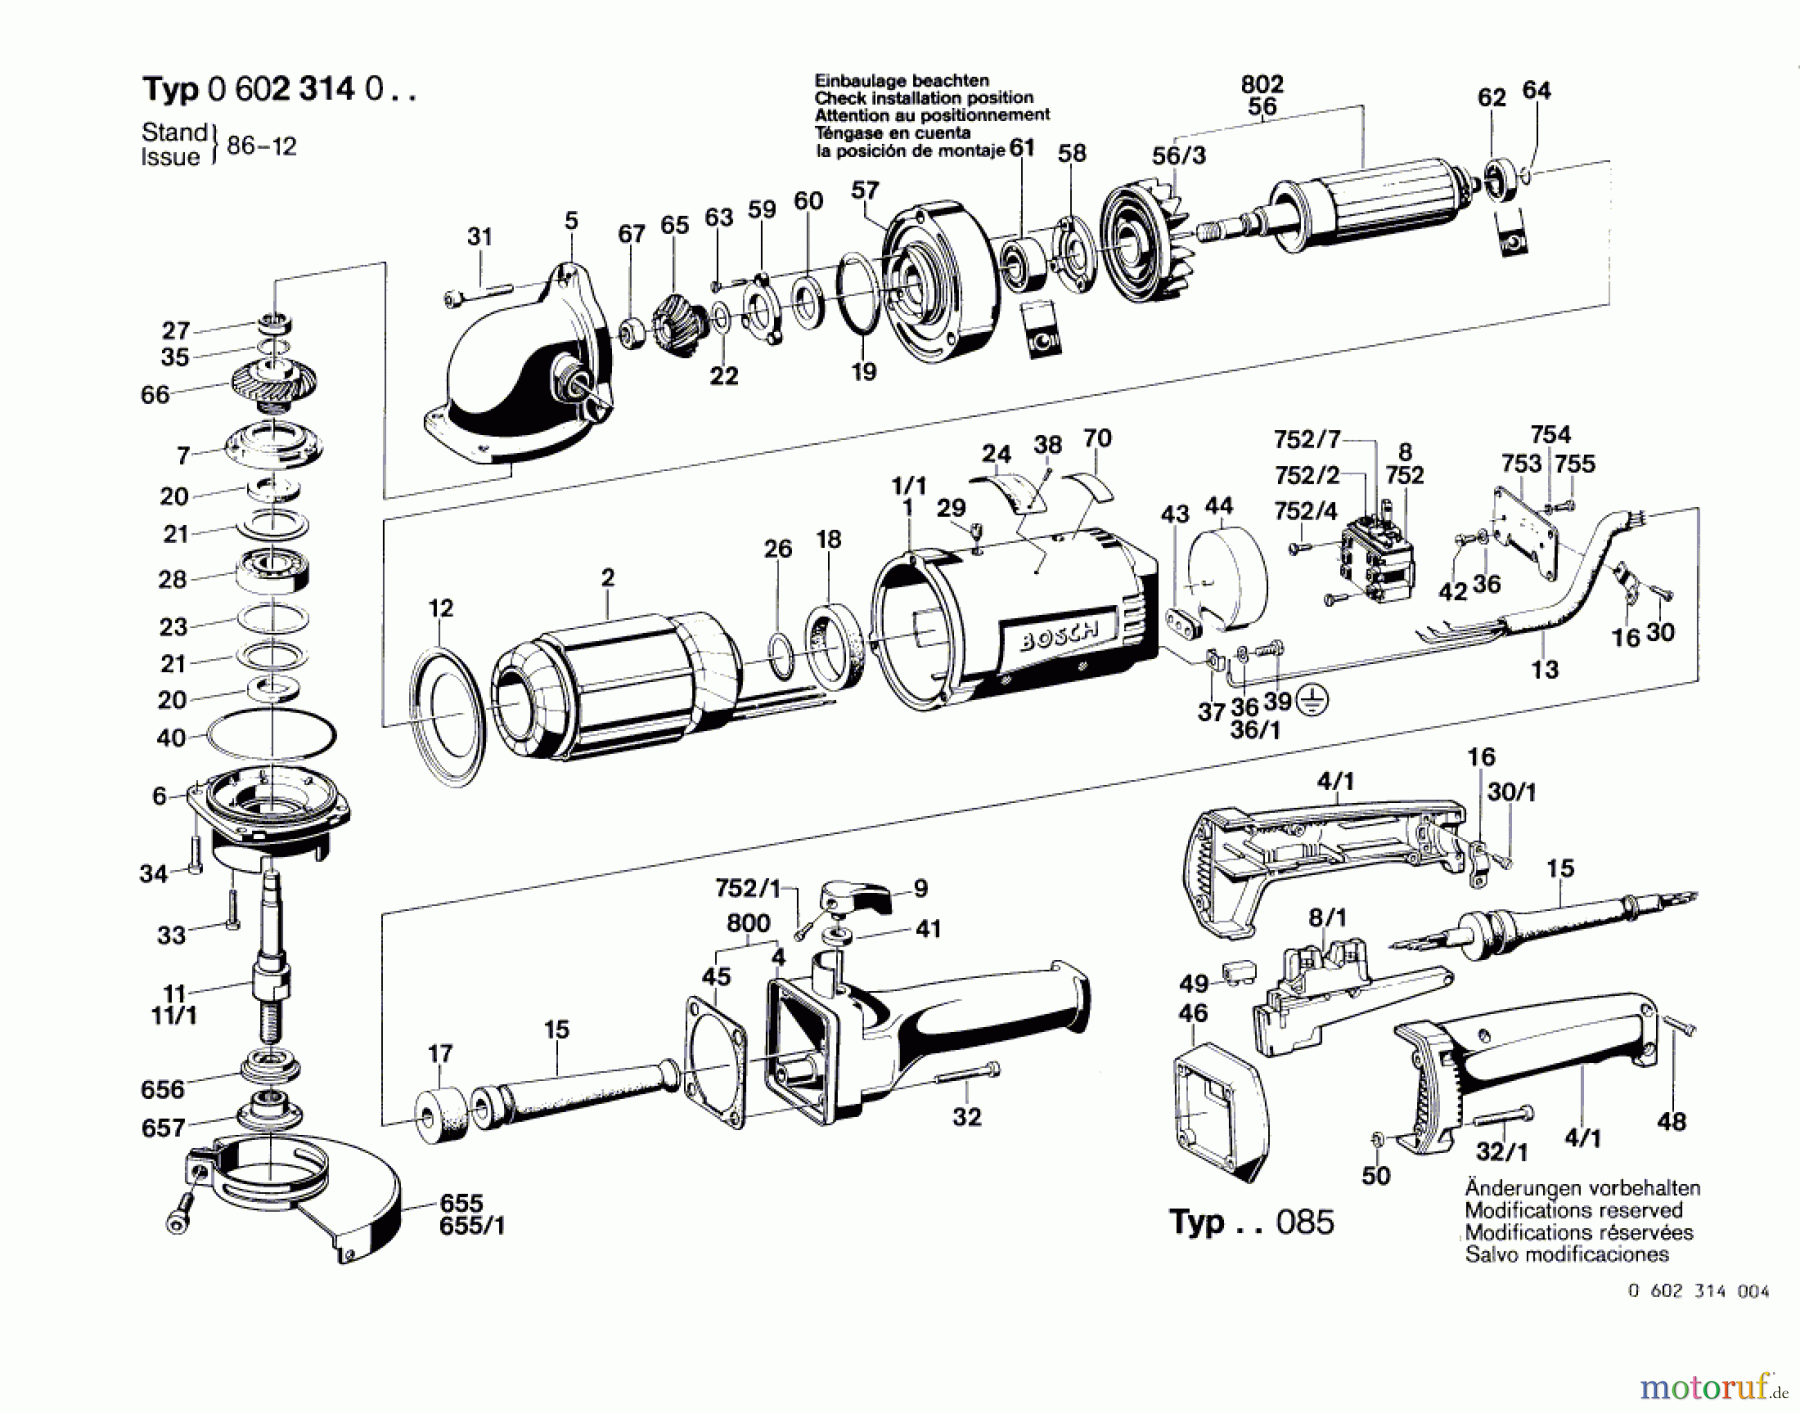  Bosch Werkzeug Hf-Winkelschleifer ---- Seite 1